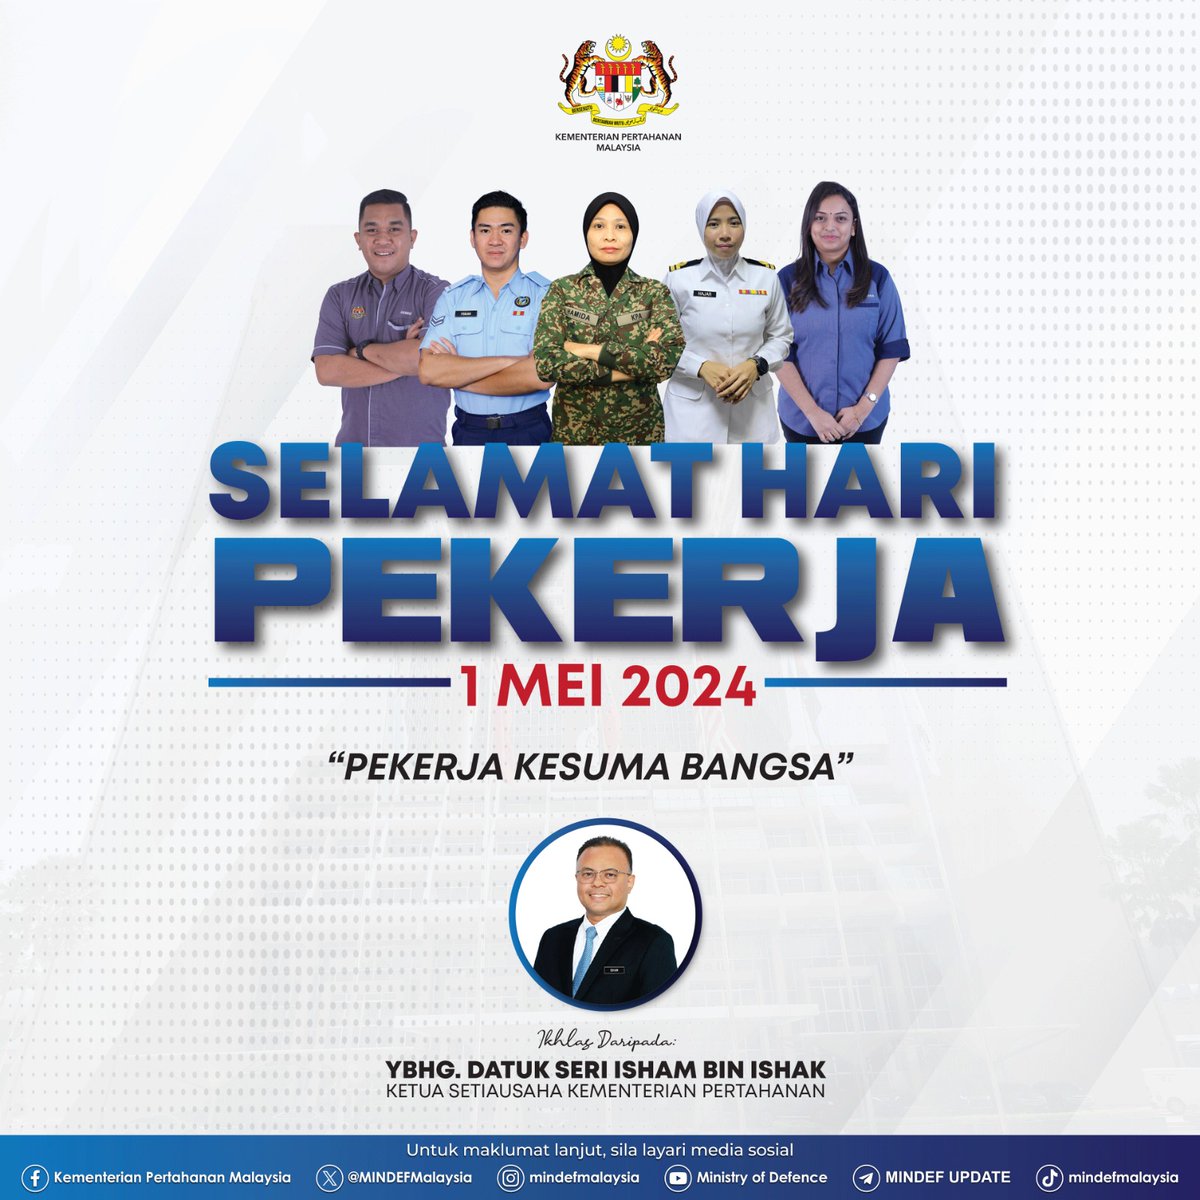 Selamat Menyambut Hari Pekerja buat warga pekerja di Malaysia

Terima kasih di atas sumbangan anda semua dan teruskan usaha ke arah membina negara Malaysia yang lebih cemerlang.

'Pekerja Kesuma Bangsa'

Ikhlas daripada,
YBhg. Datuk Seri Isham bin Ishak
Ketua Setiausaha